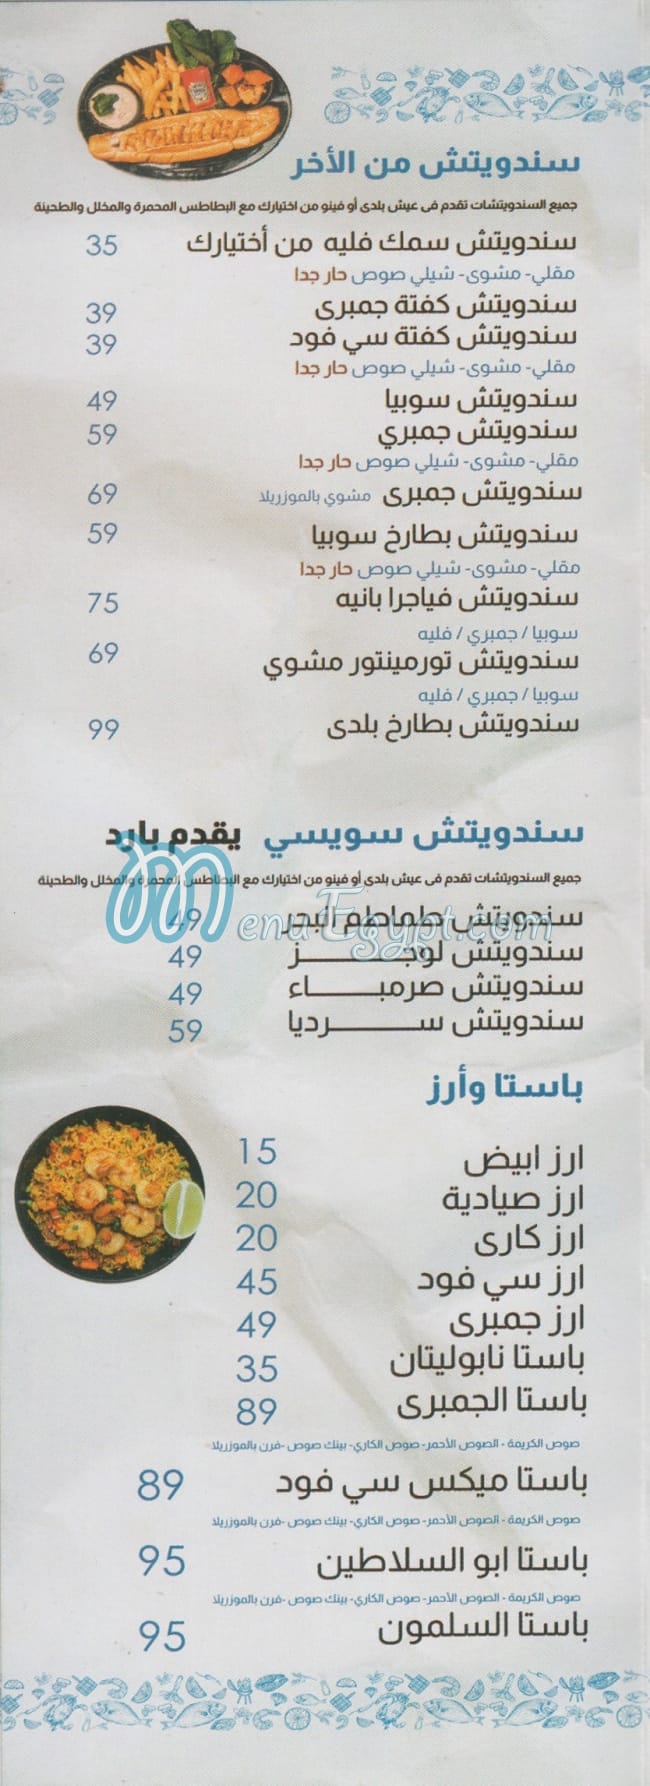 Abo El Salateen menu prices